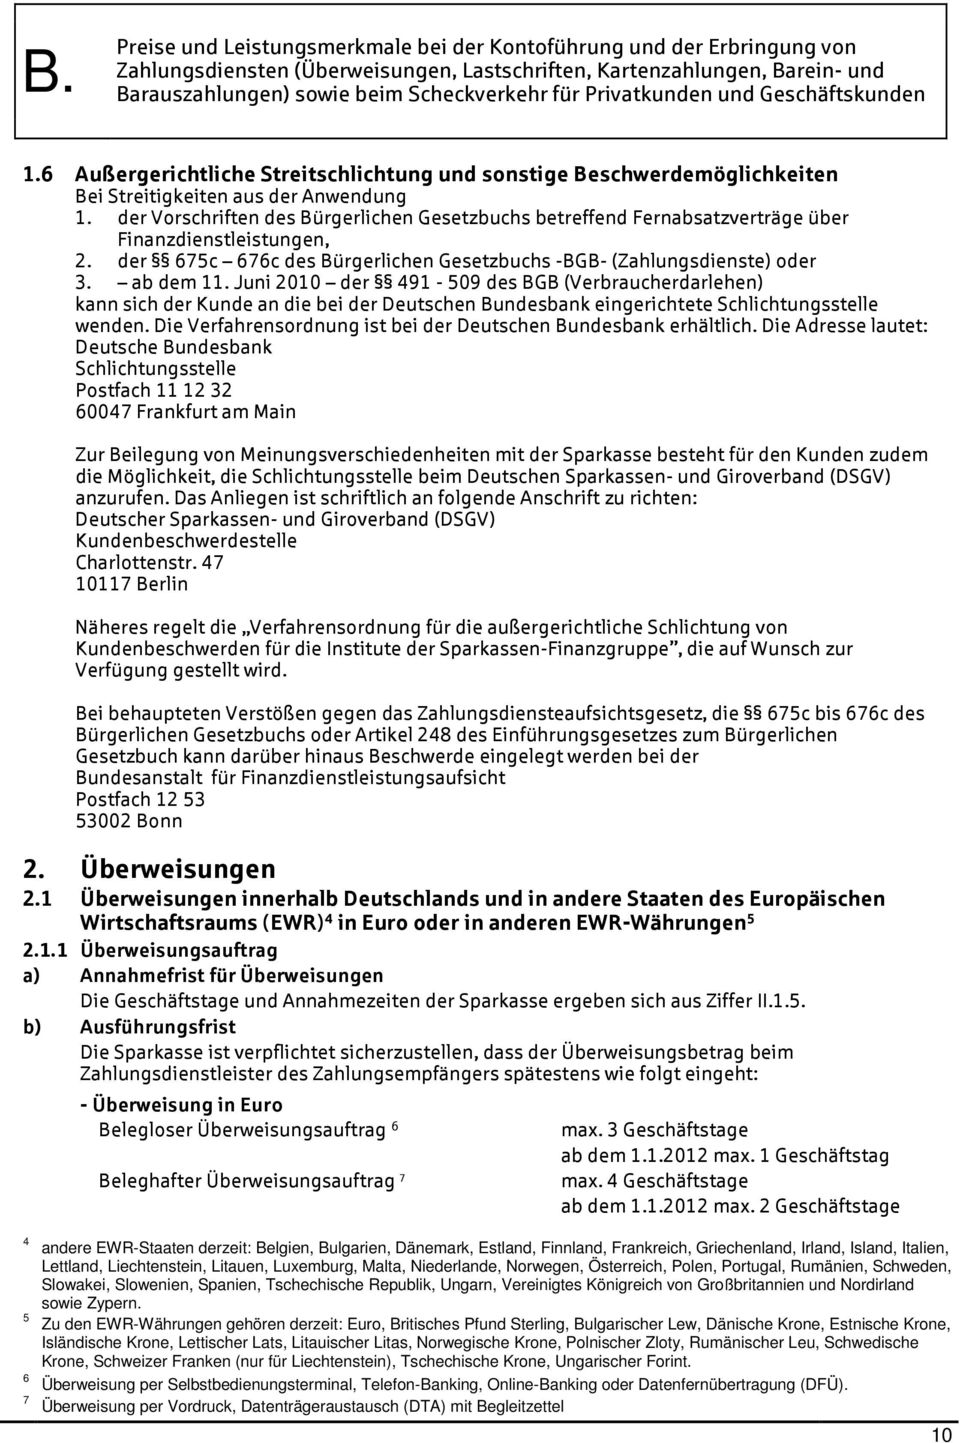 Juni 2010 der 491-509 des BGB (Verbraucherdarlehen) kann sich der Kunde an die bei der Deutschen Bundesbank eingerichtete Schlichtungsstelle wenden.